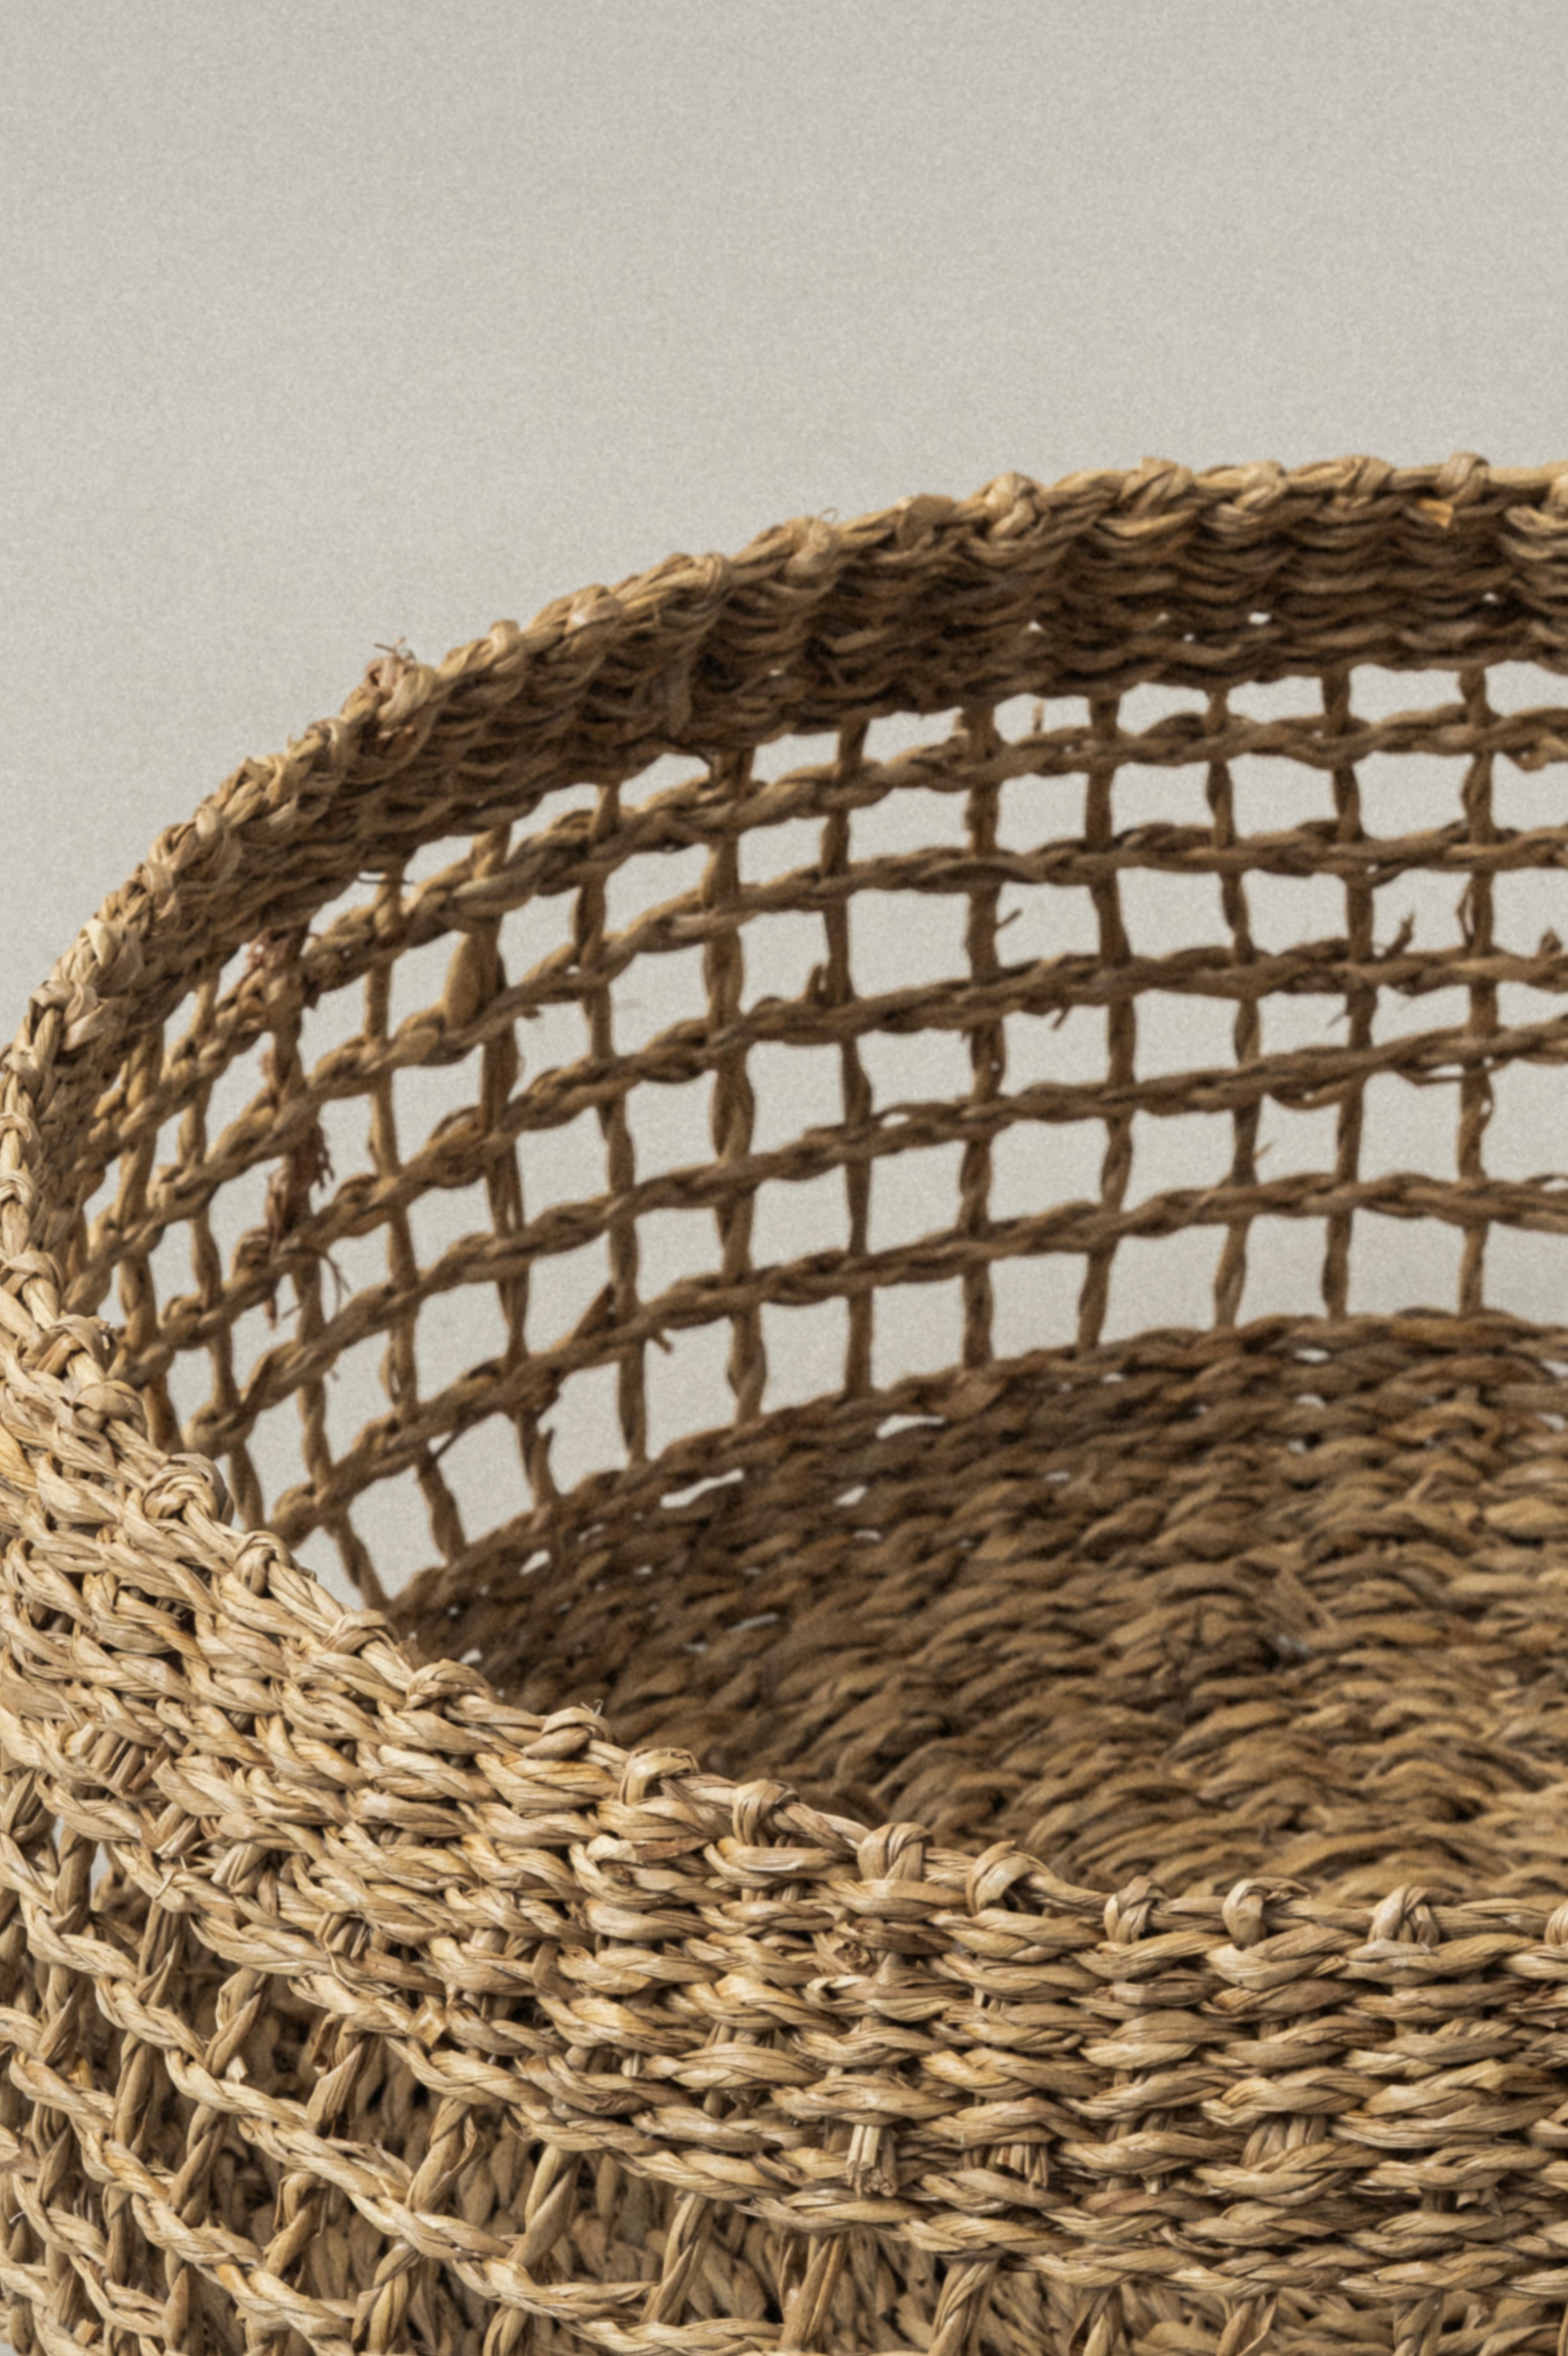 Large Siwa Round Seagrass Basket - Large Siwa Round Seagrass Basket